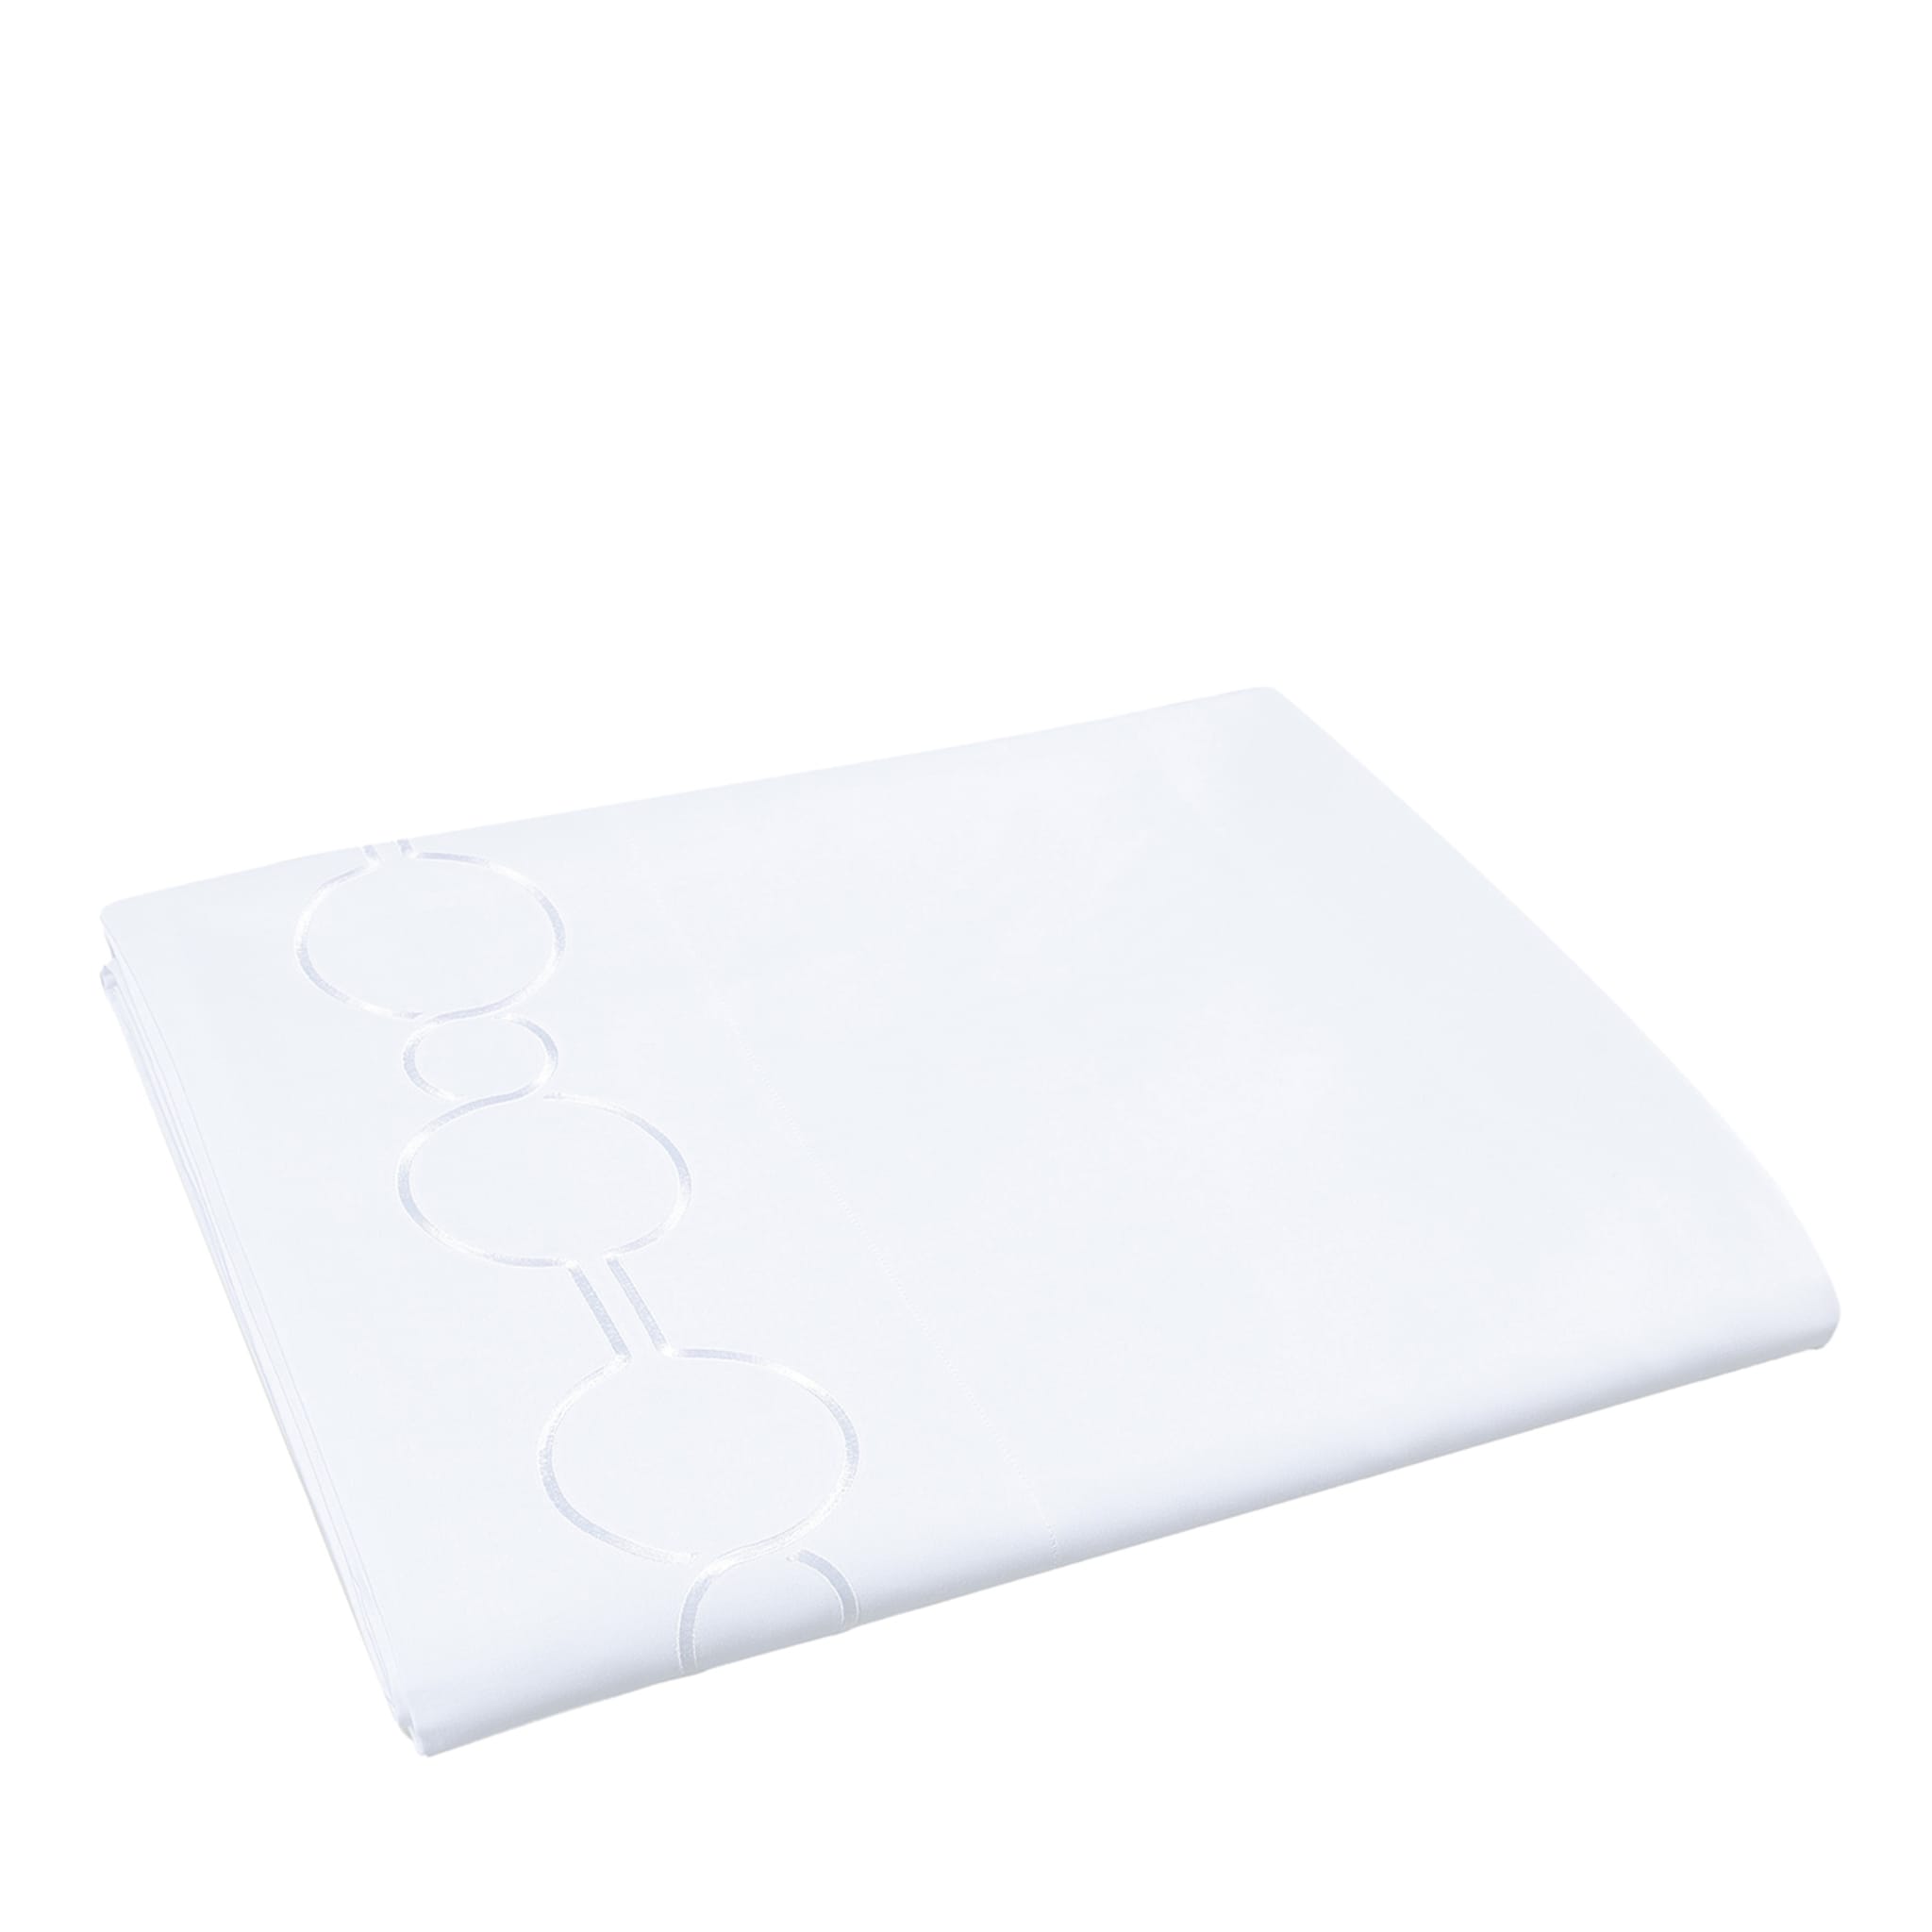 Shangri-La White Double Bed Sheet (drap de lit double blanc) - Vue principale